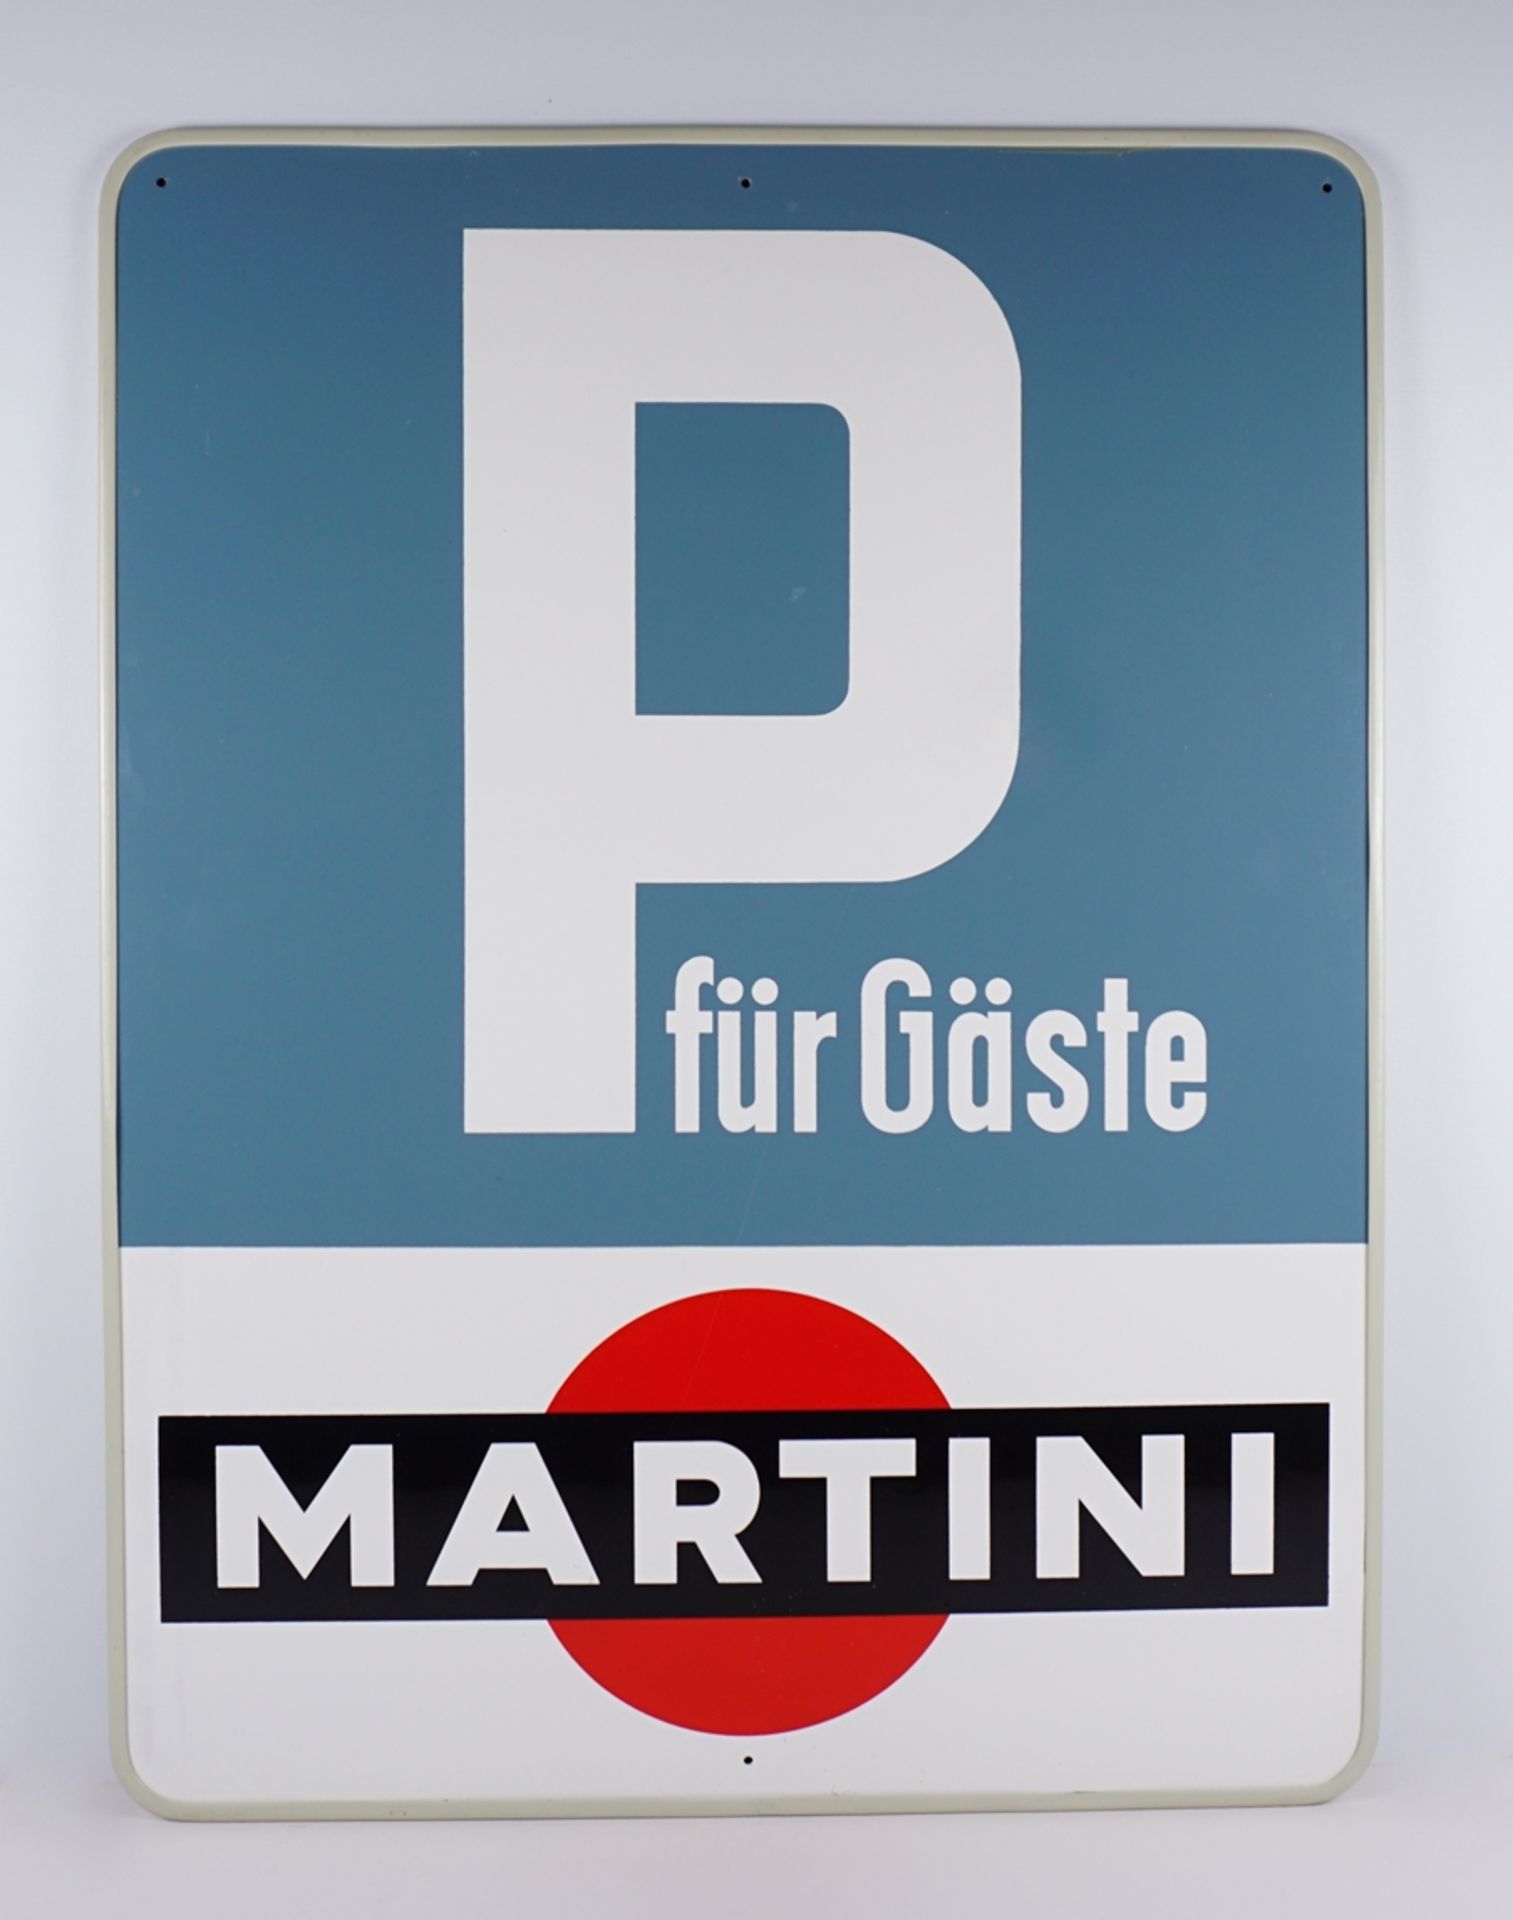 Parkplatzschild "P für Gäste", Martini-Werbung, 1970er Jahre